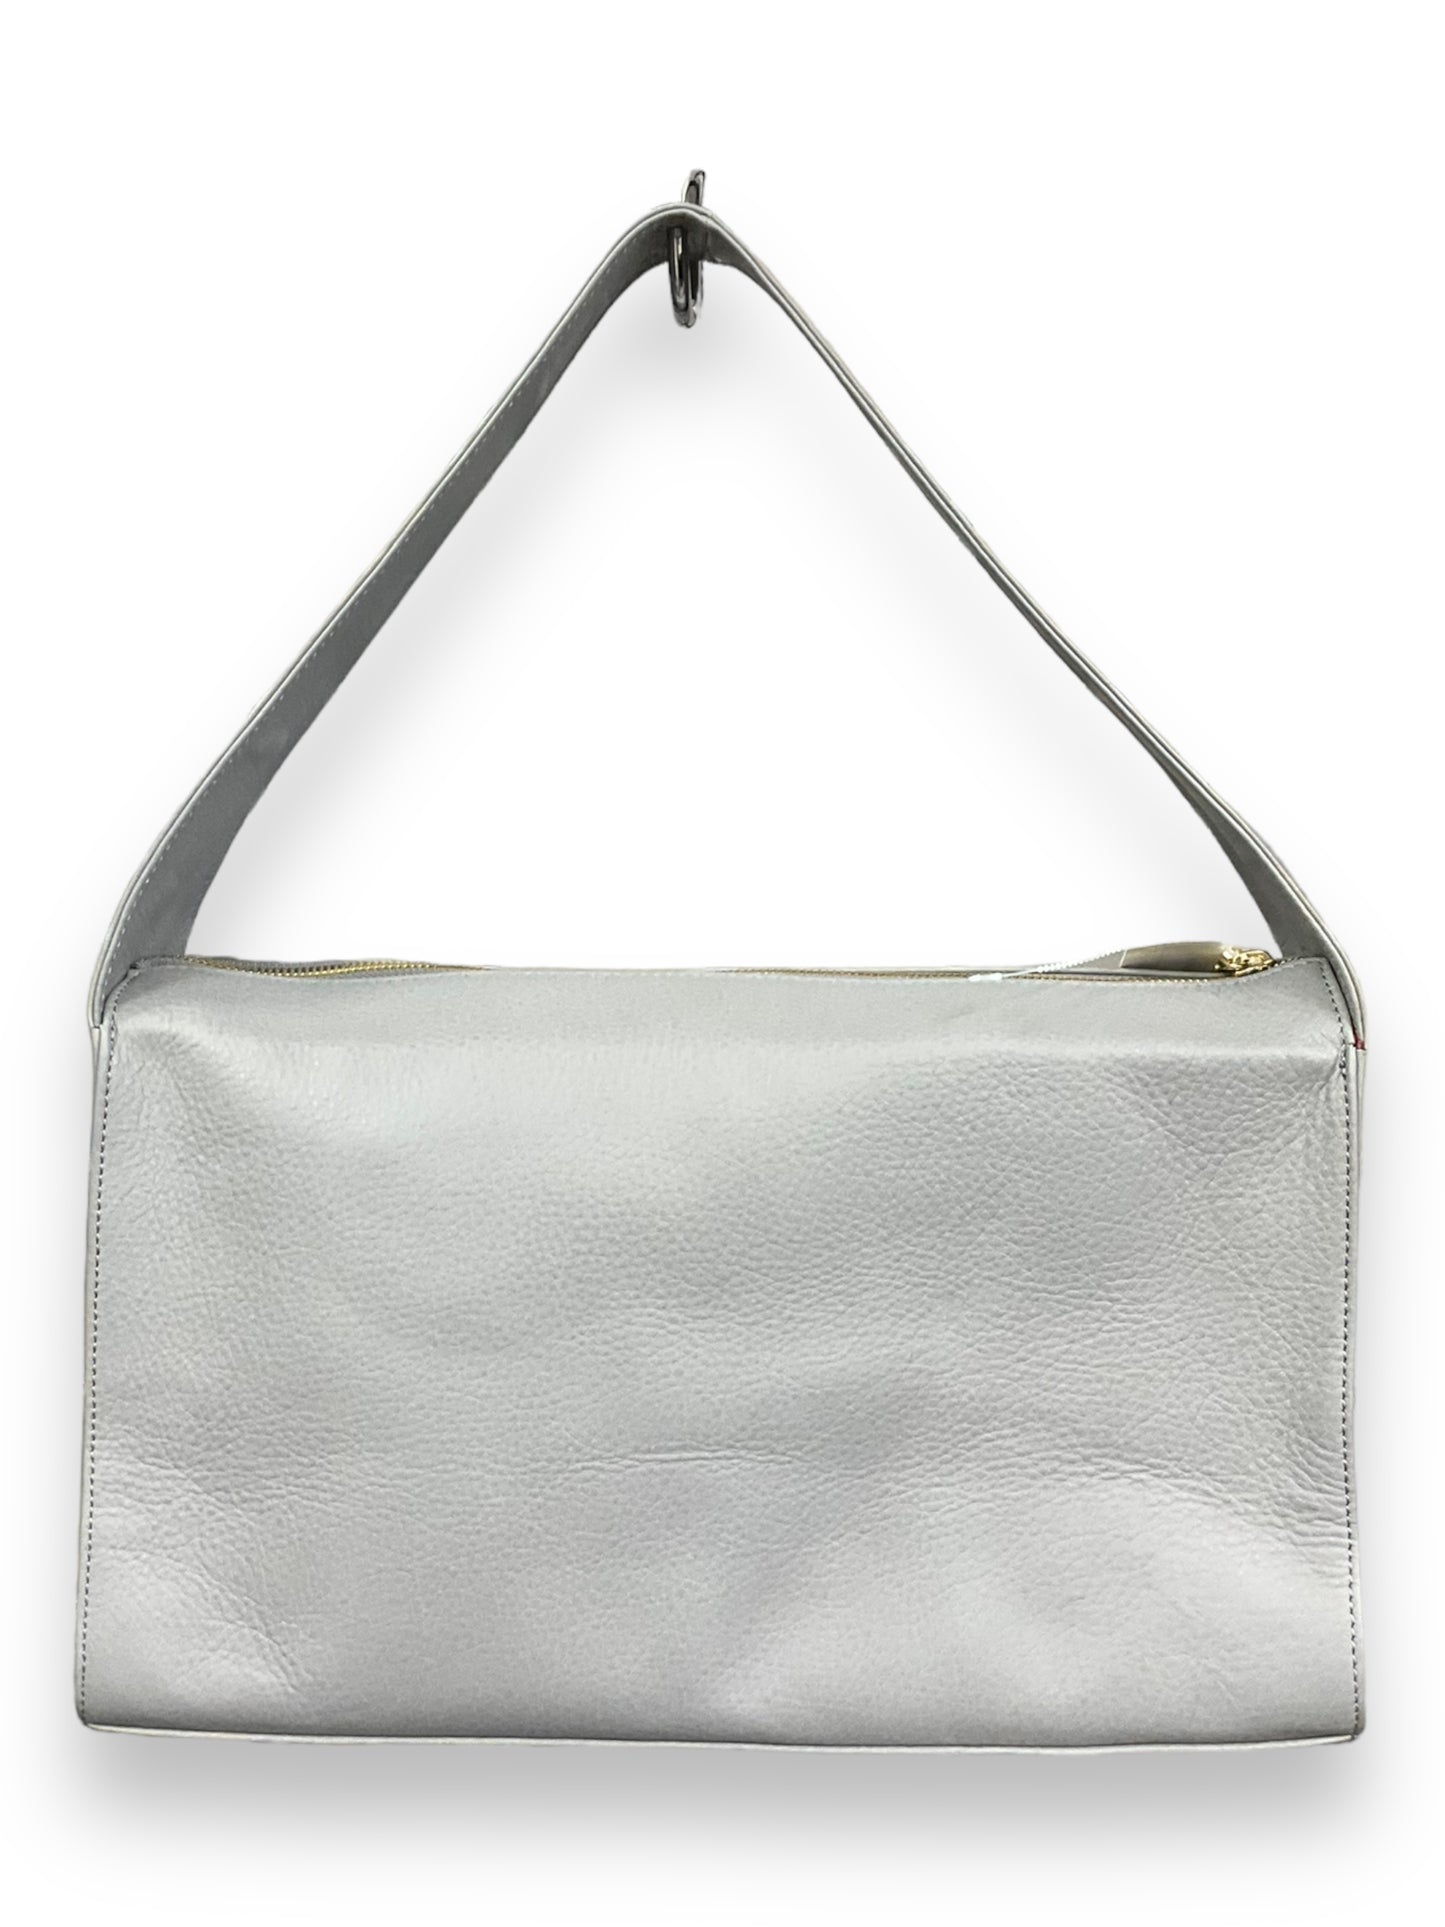 Handbag Designer By Cmb  Size: Large